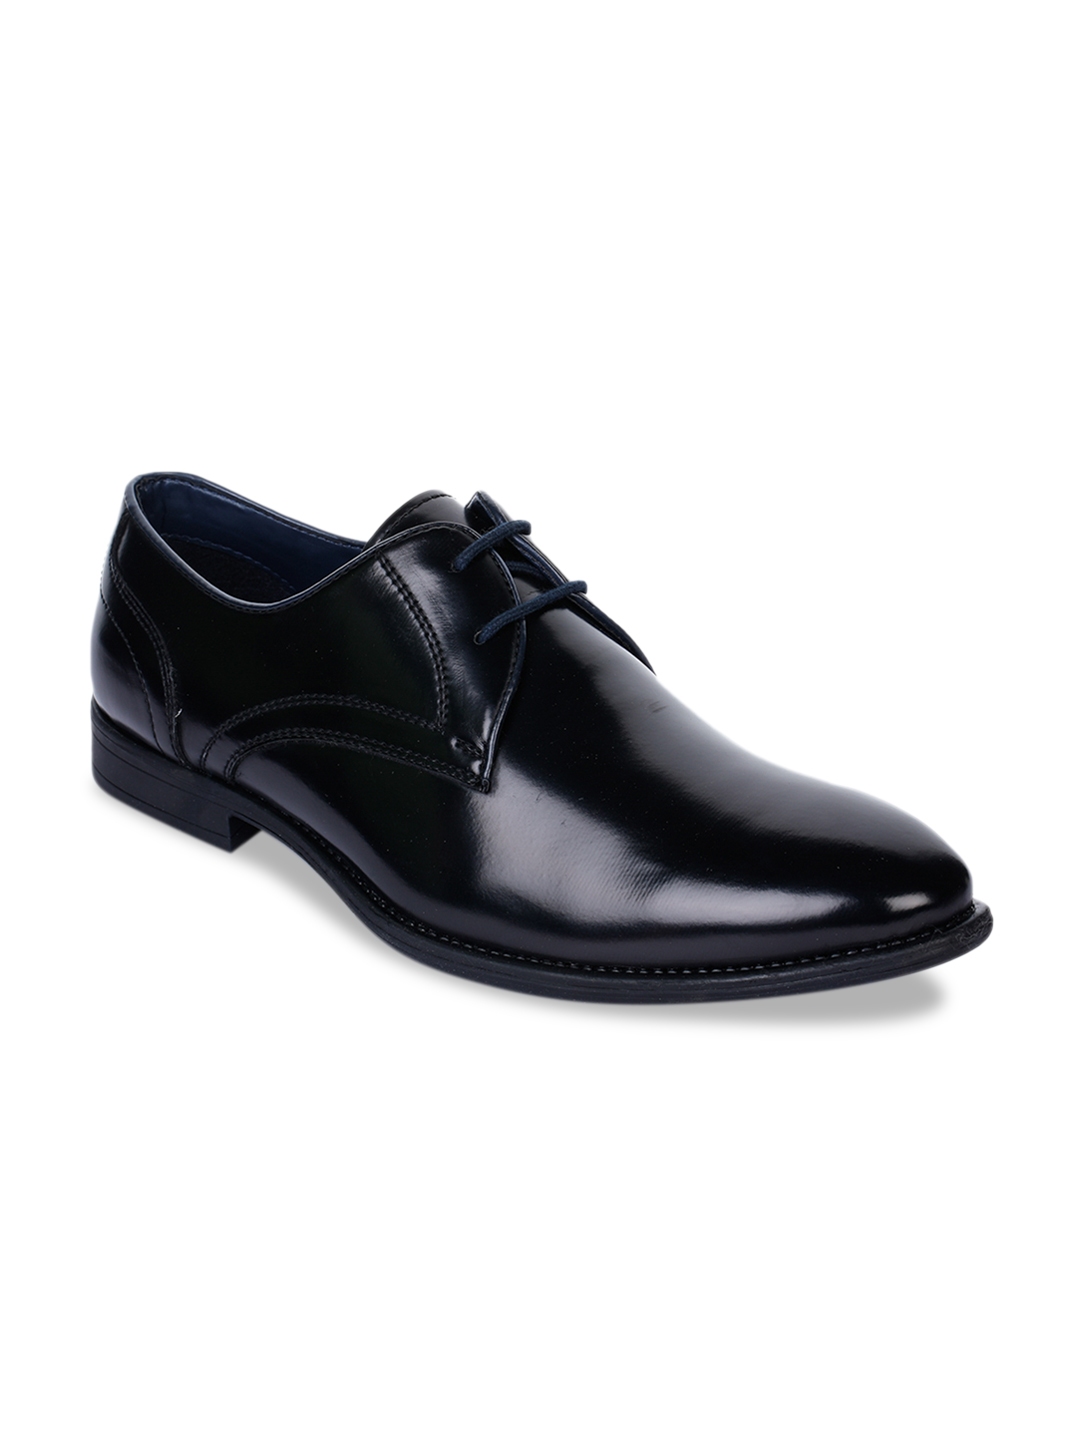 Buy Bruno Manetti Men Black Solid Leather Formal Derbys - Formal Shoes ...